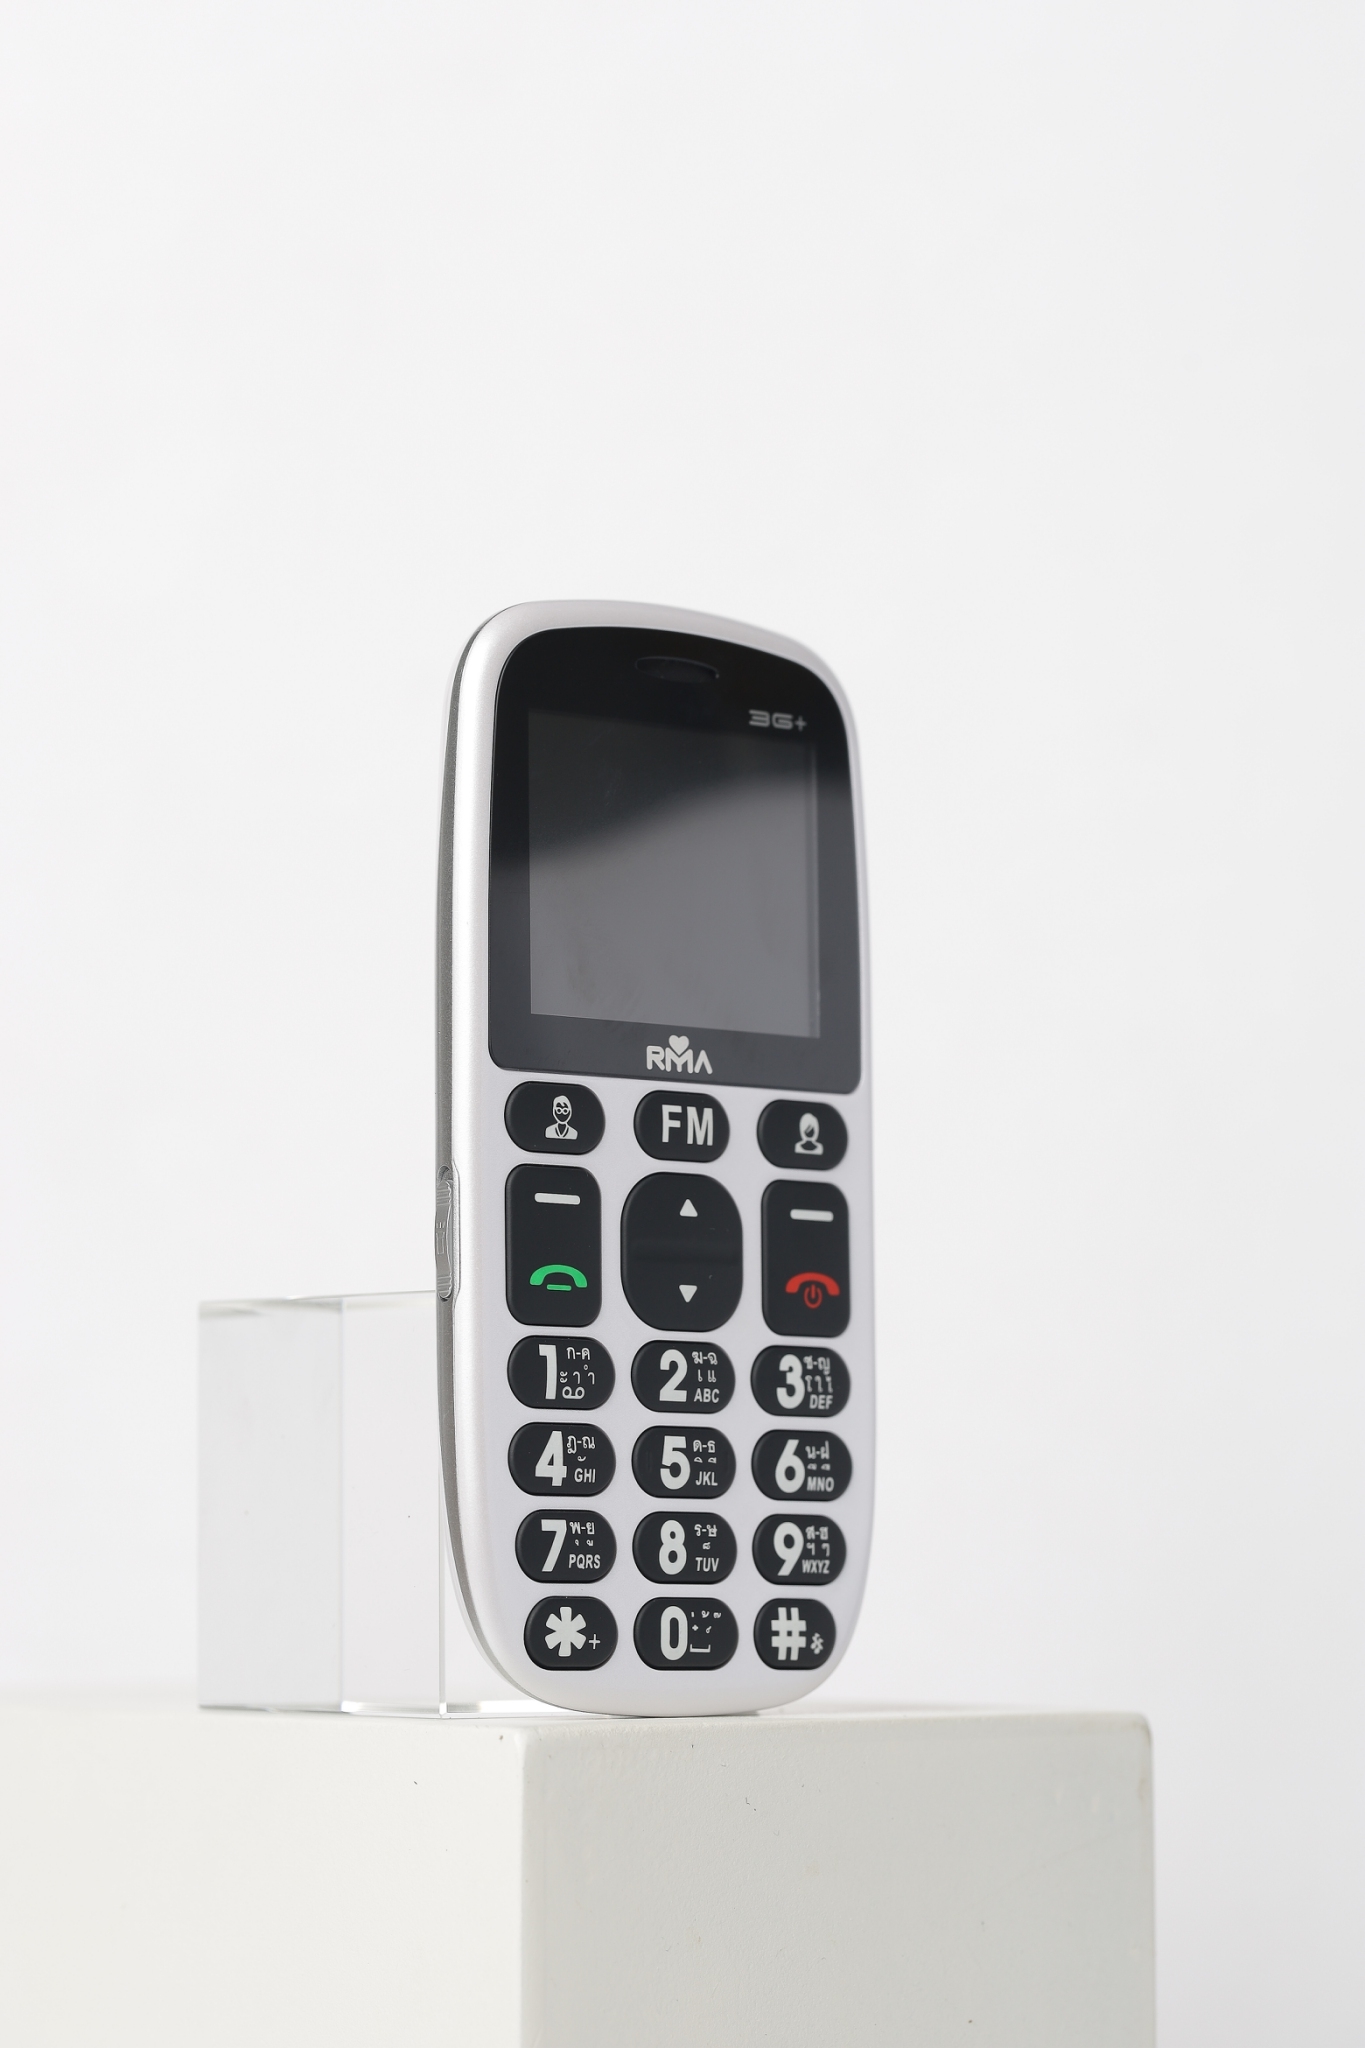 RMA 3G ขาว ด้านหน้า | มือถือผู้สูงอายุ | อาม่า 3G+เอาใจคนสูงวัยในราคา 1,490 บาท เน้นปฏิบัติการ SOS ขอความช่วยเหลือผ่านมือถือ